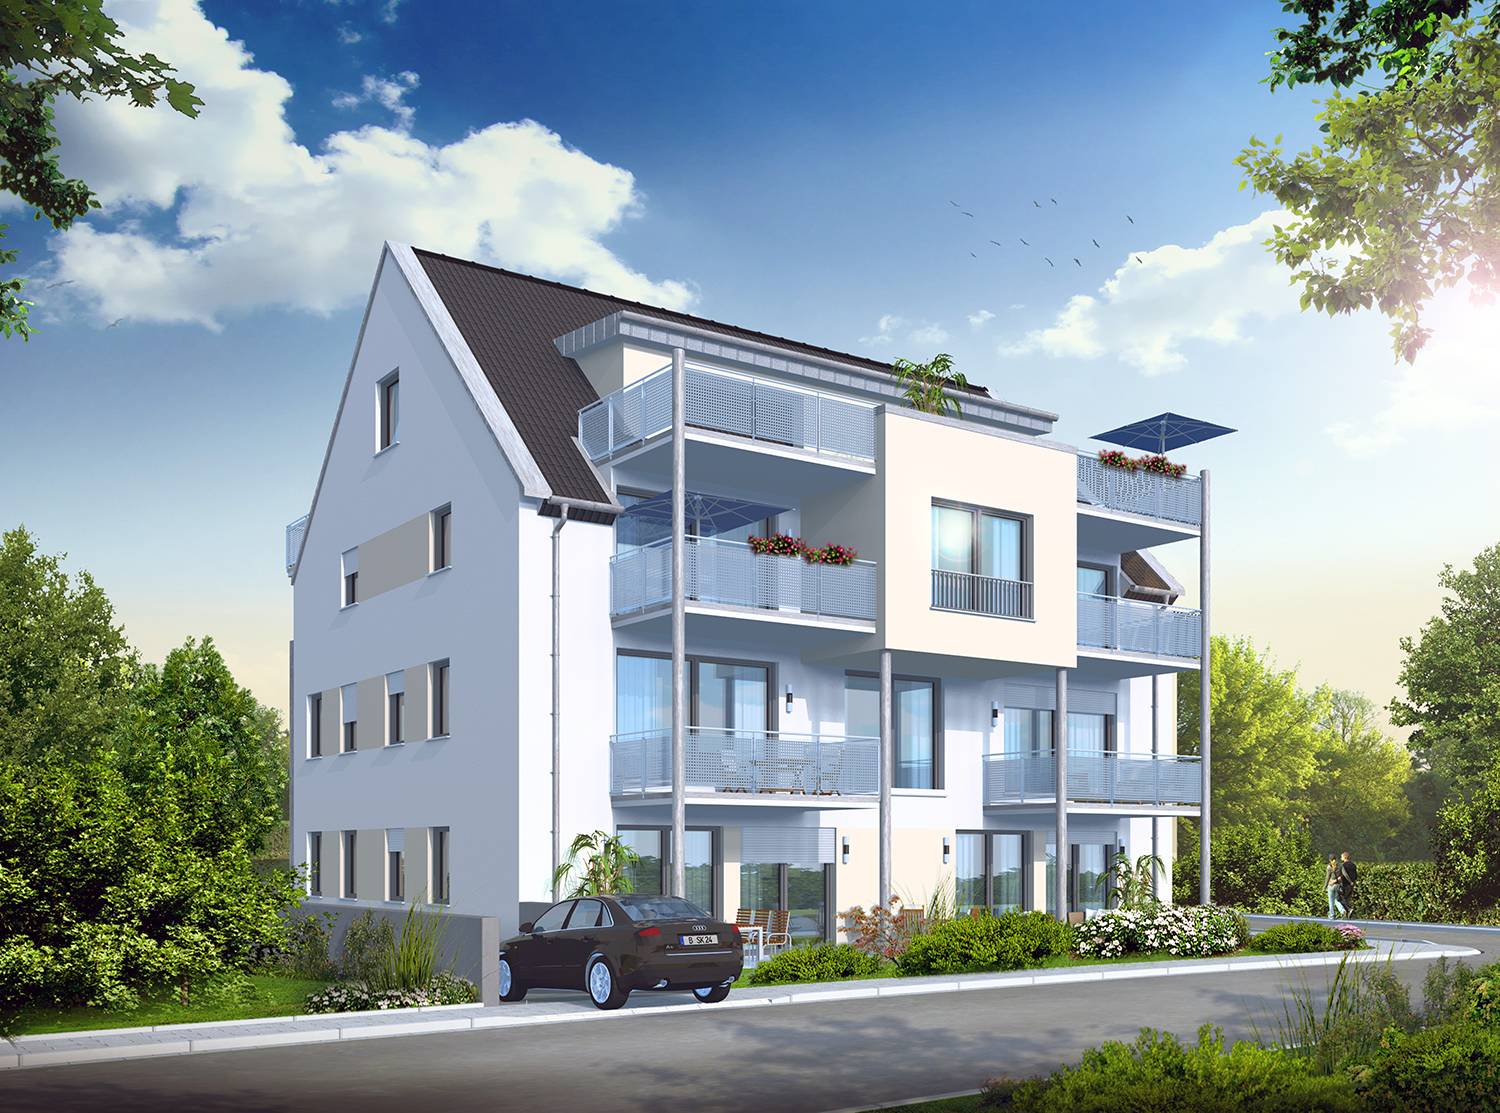 Architekturvisualisierung Straßenansicht vom Süd-Westen des Umbaus und der Sanierung von 2 Mehrfamilienhäusern in Herlikofen, Schwäbisch Gmünd. Visualisiert für die Firma Dincel Projektbau GmbH im Jahre 2022